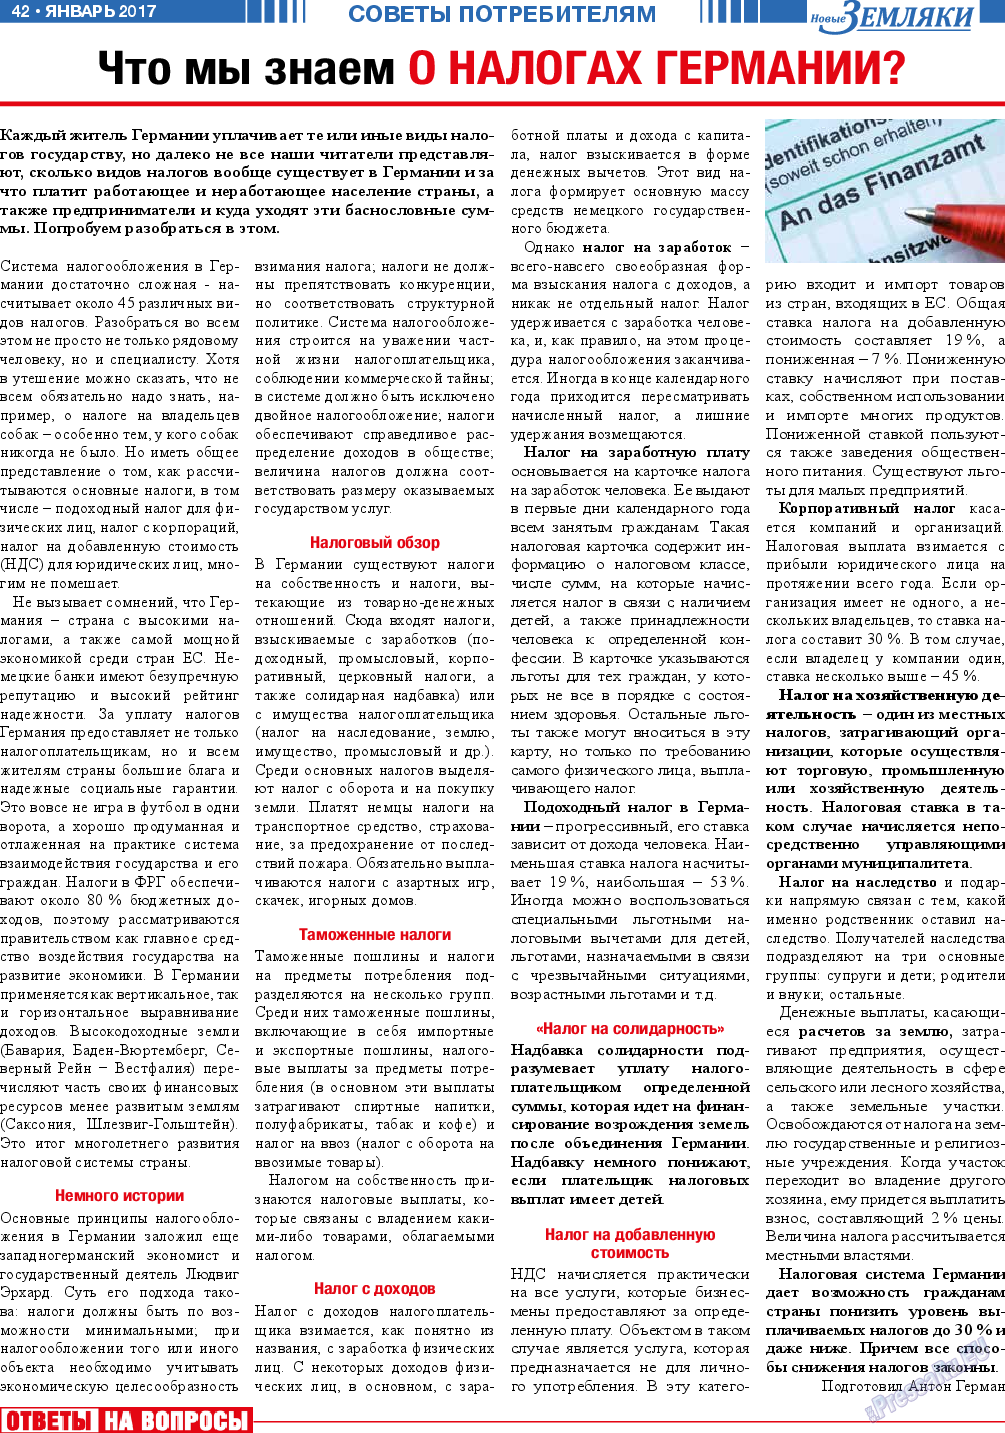 Новые Земляки (газета). 2017 год, номер 1, стр. 42